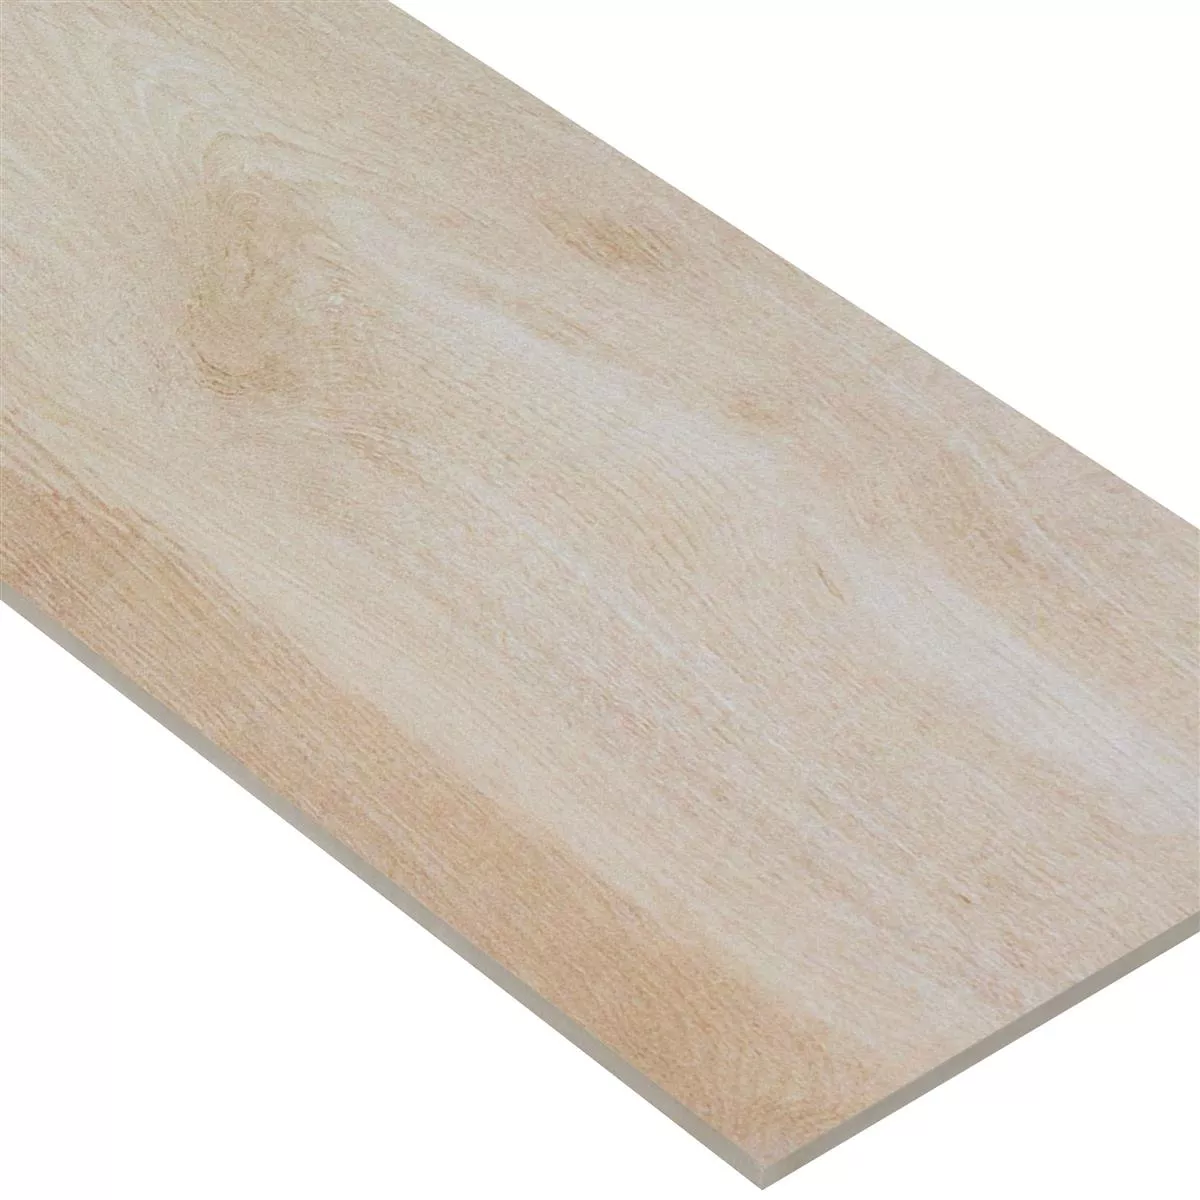 Floor Tiles Wood Optic Caledonia Beige 30x120cm